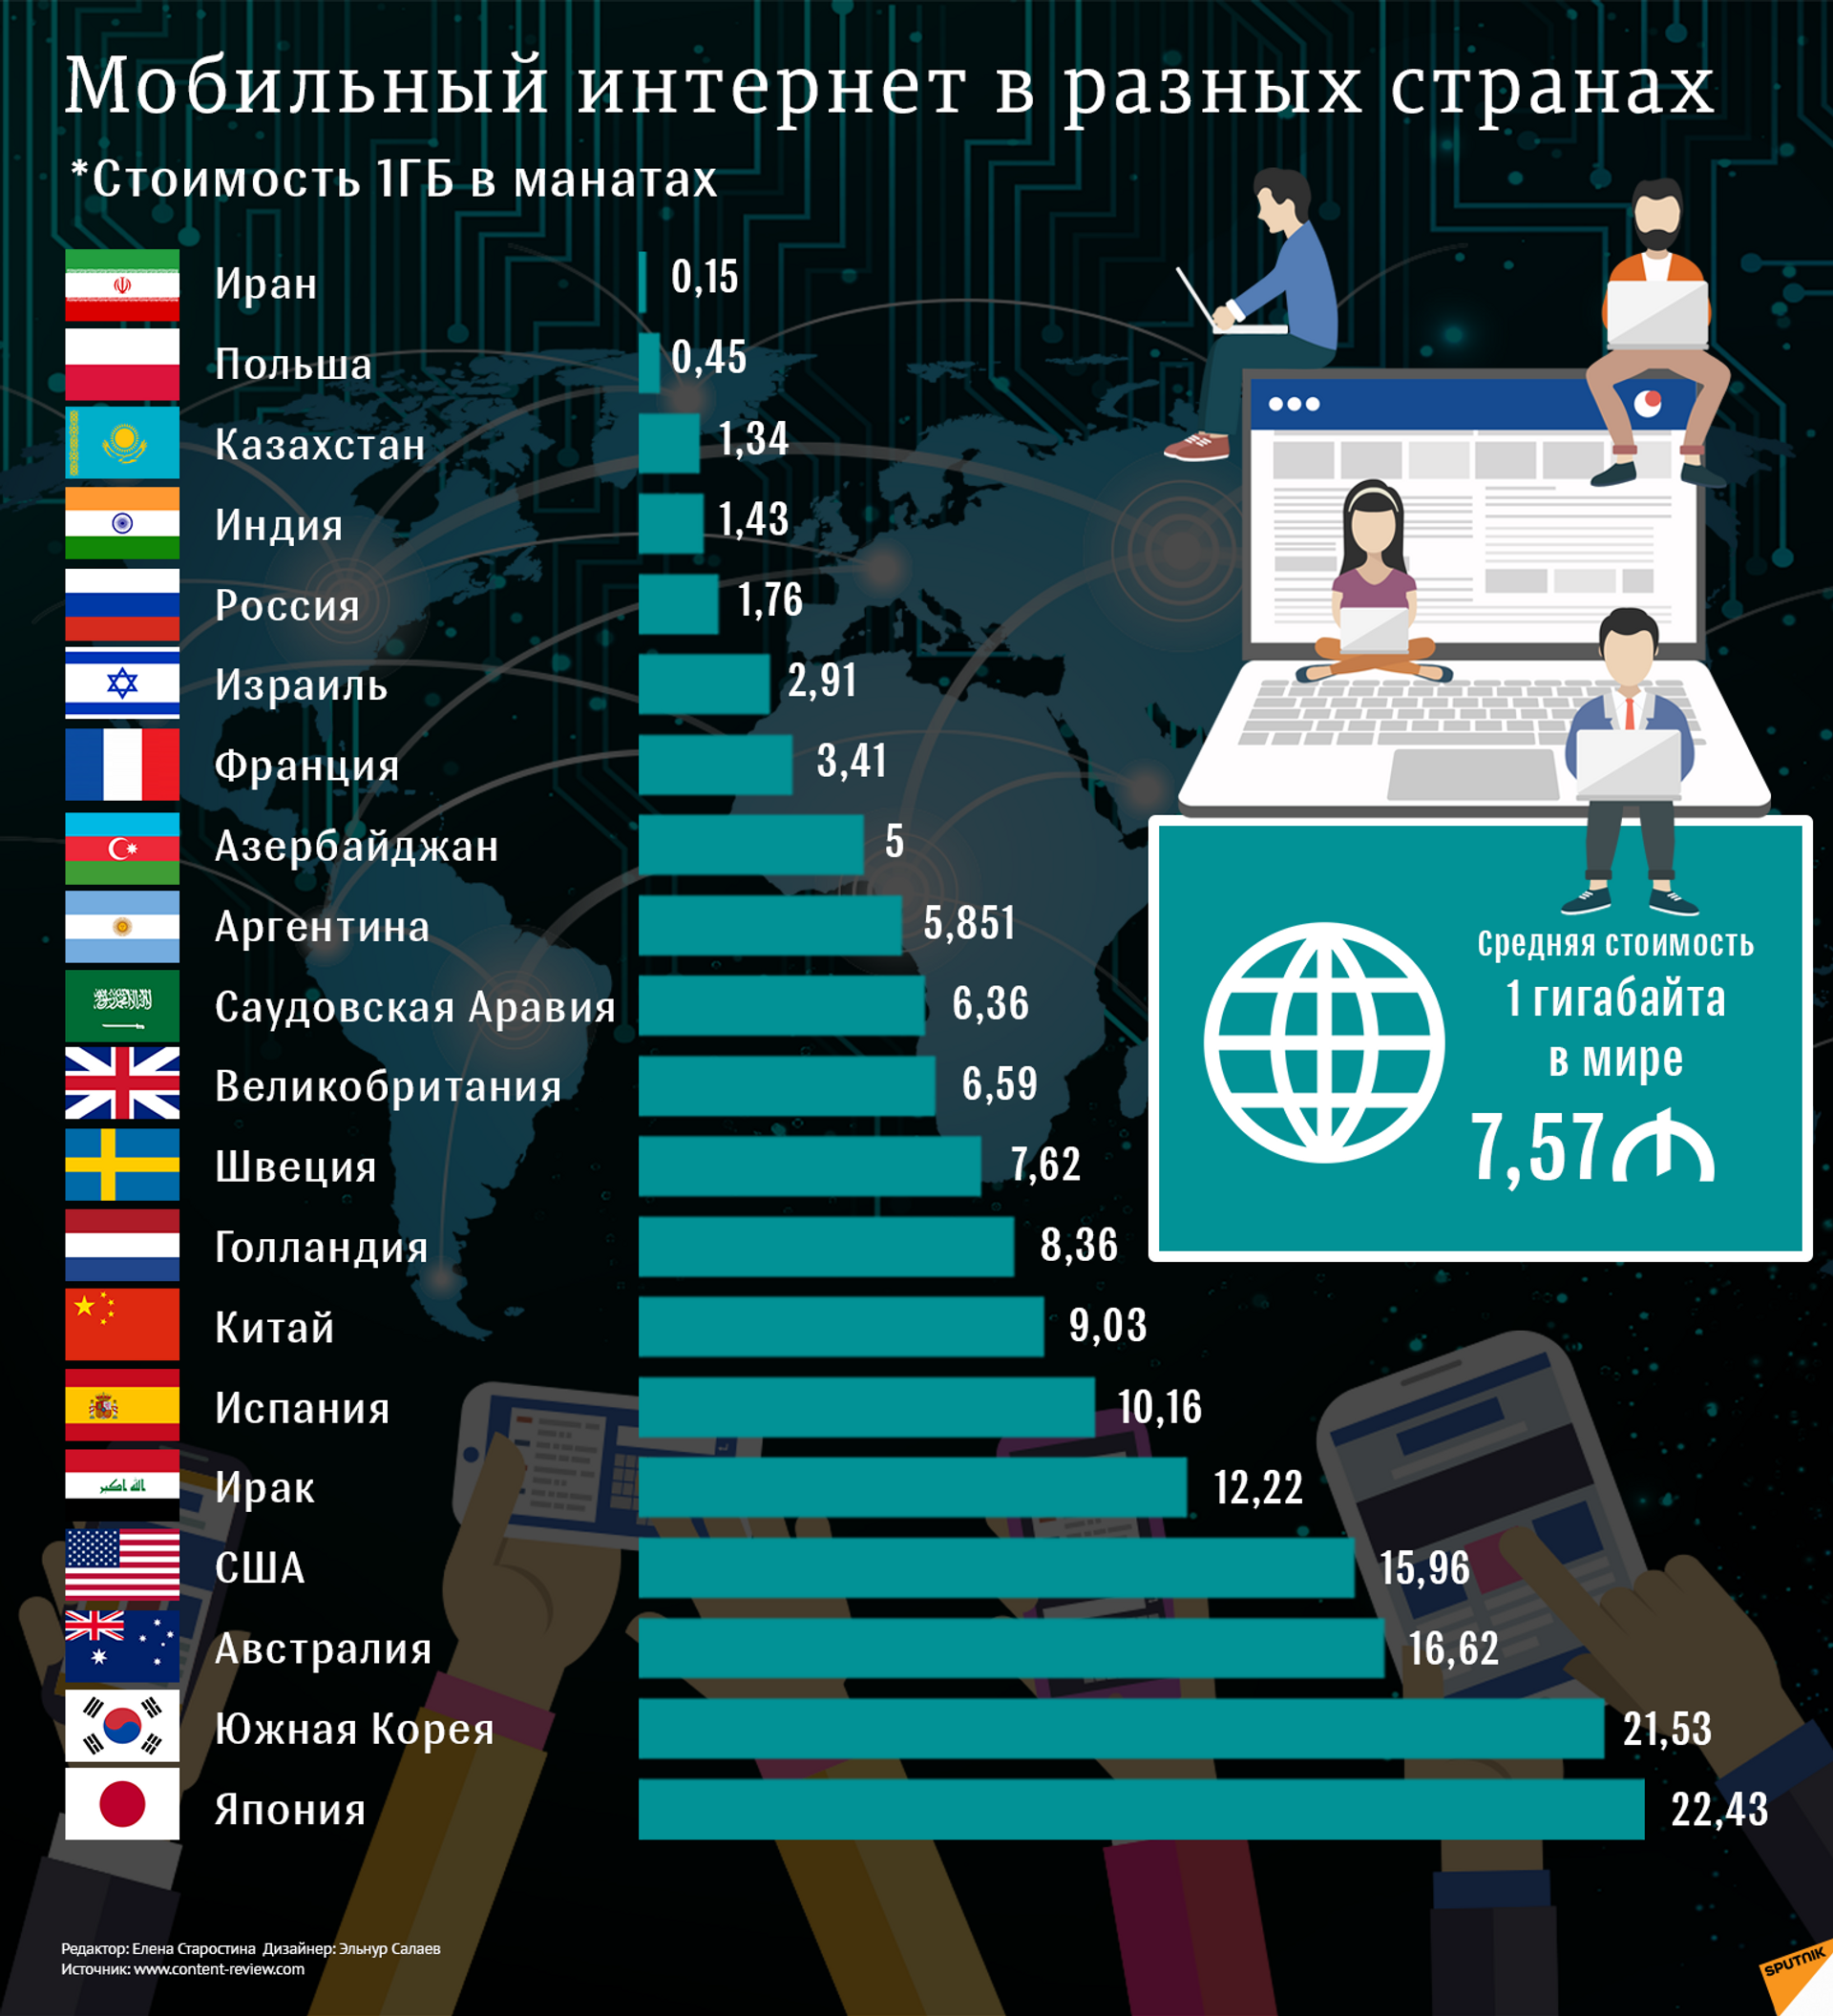 Сколько интернетов в мире. Стоимость интернета в мире по странам. Самый лучший интернет в мире. Использование интернета в разных странах. Рейтинг разных стран.